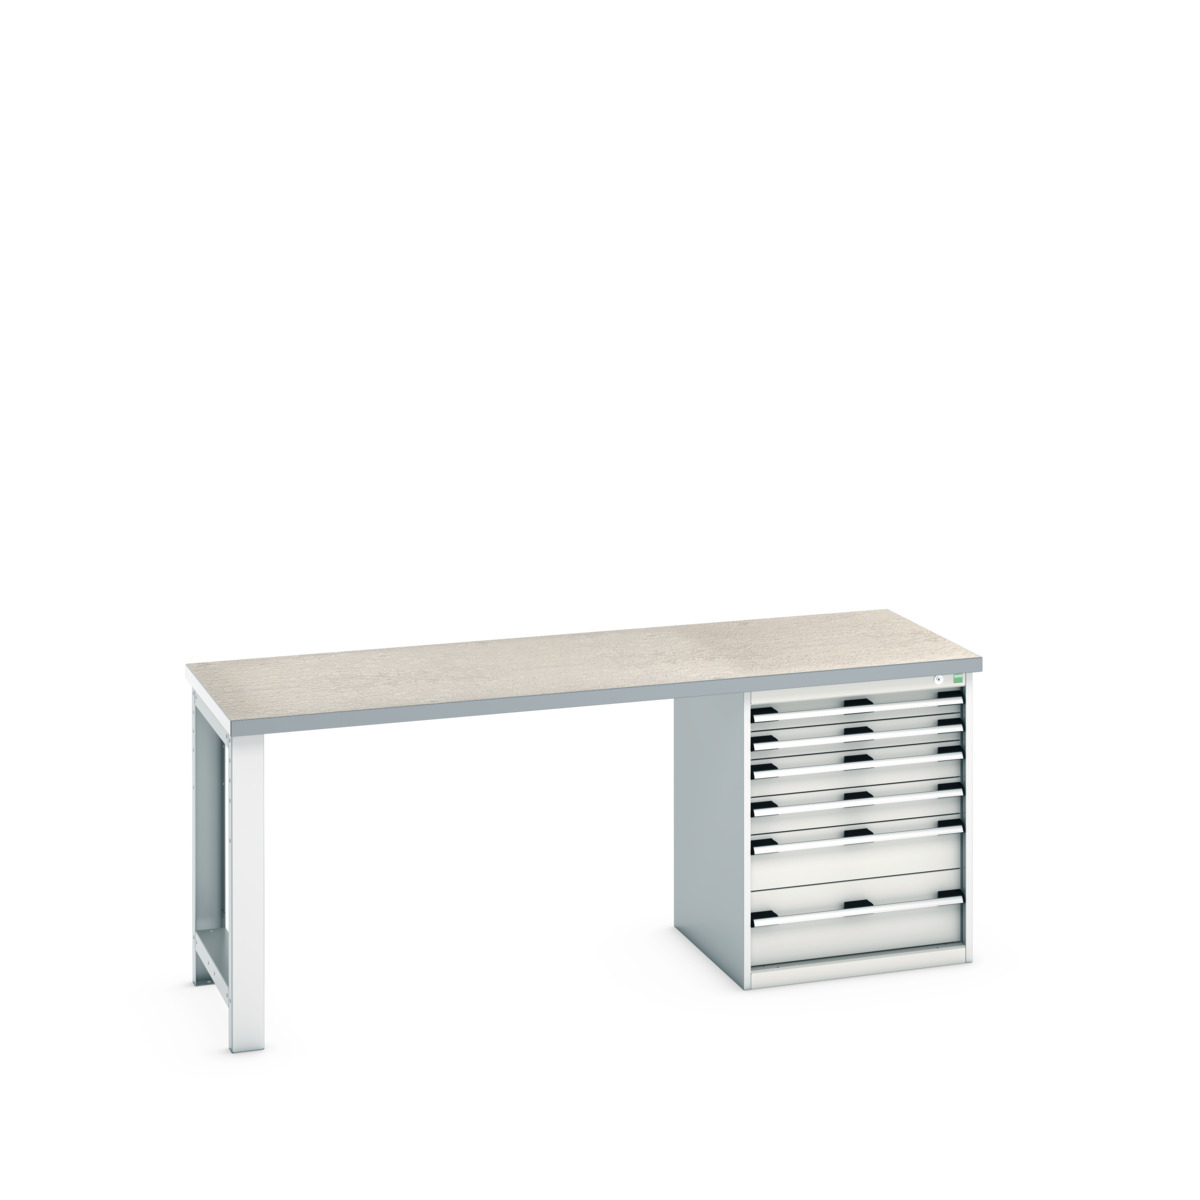 41003237.16V - cubio pedestal bench (lino)